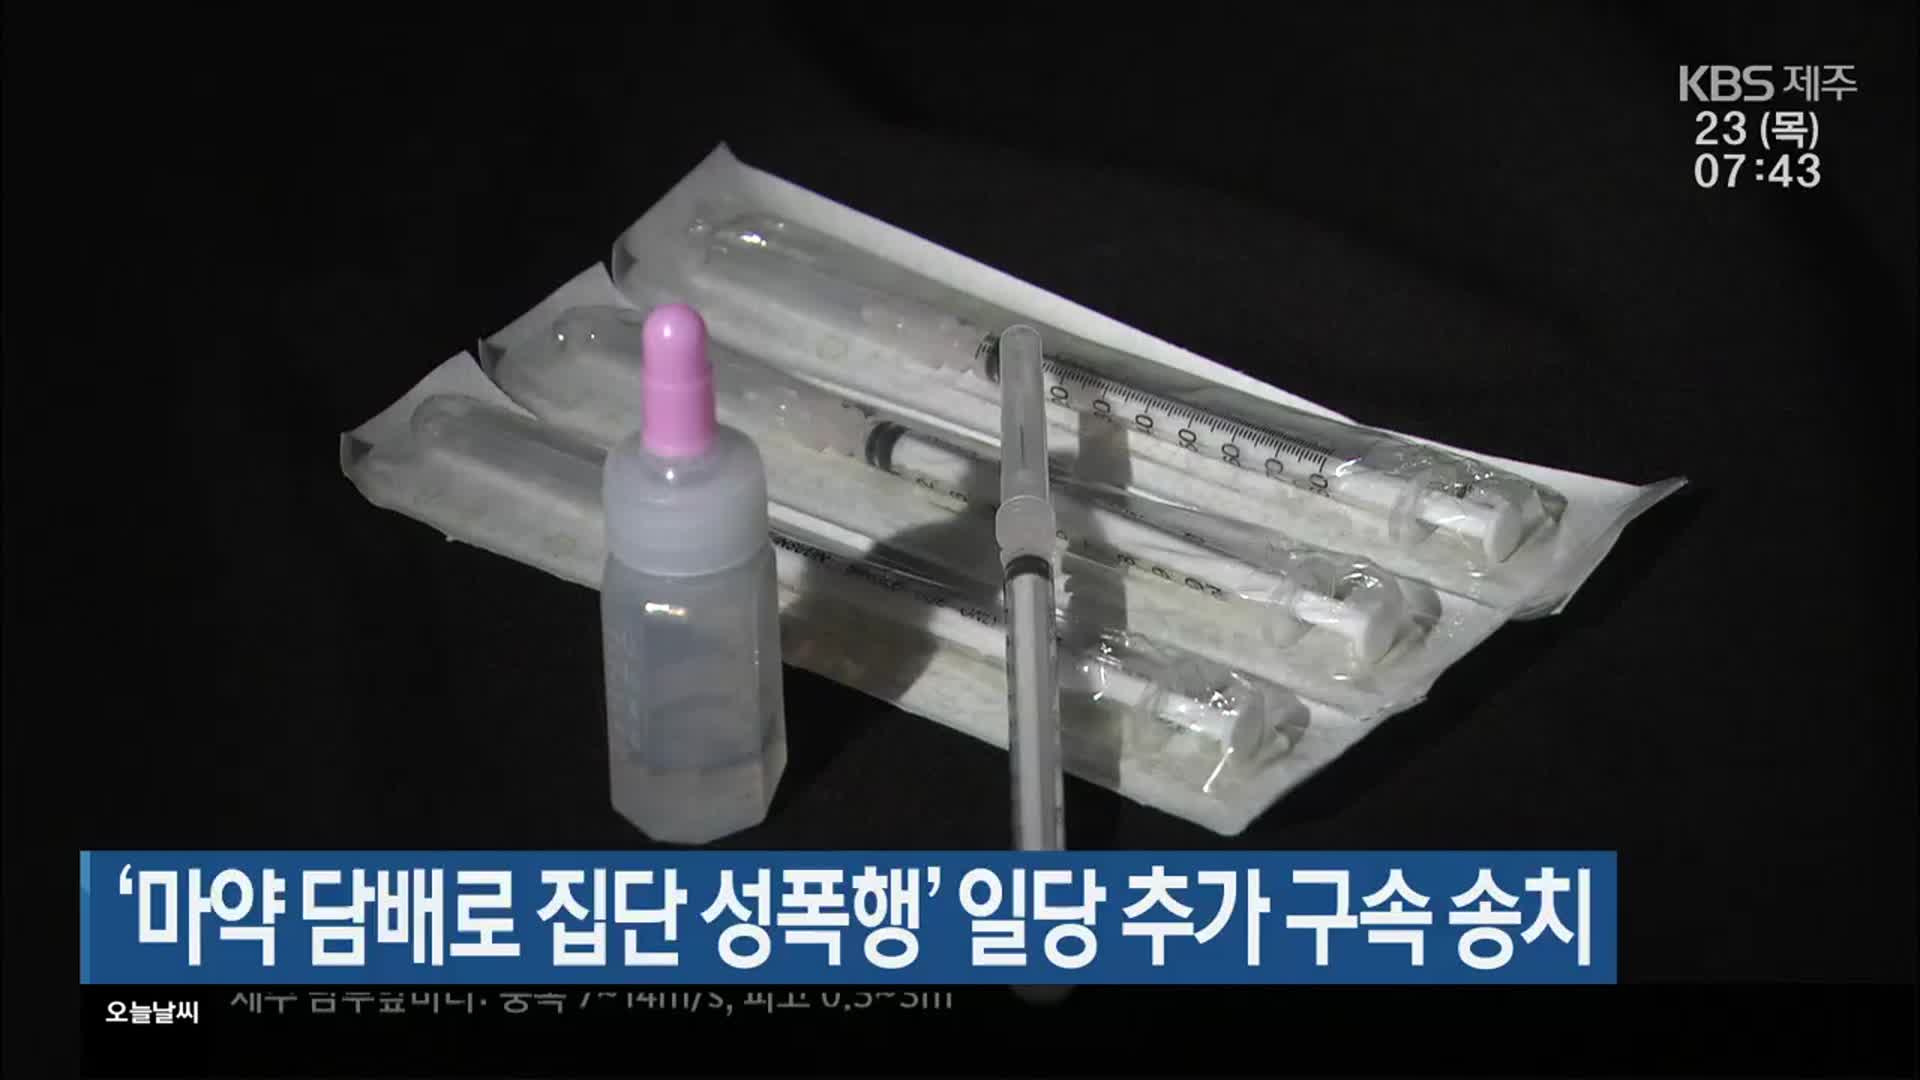 ‘마약 담배로 집단 성폭행’ 일당 추가 구속 송치